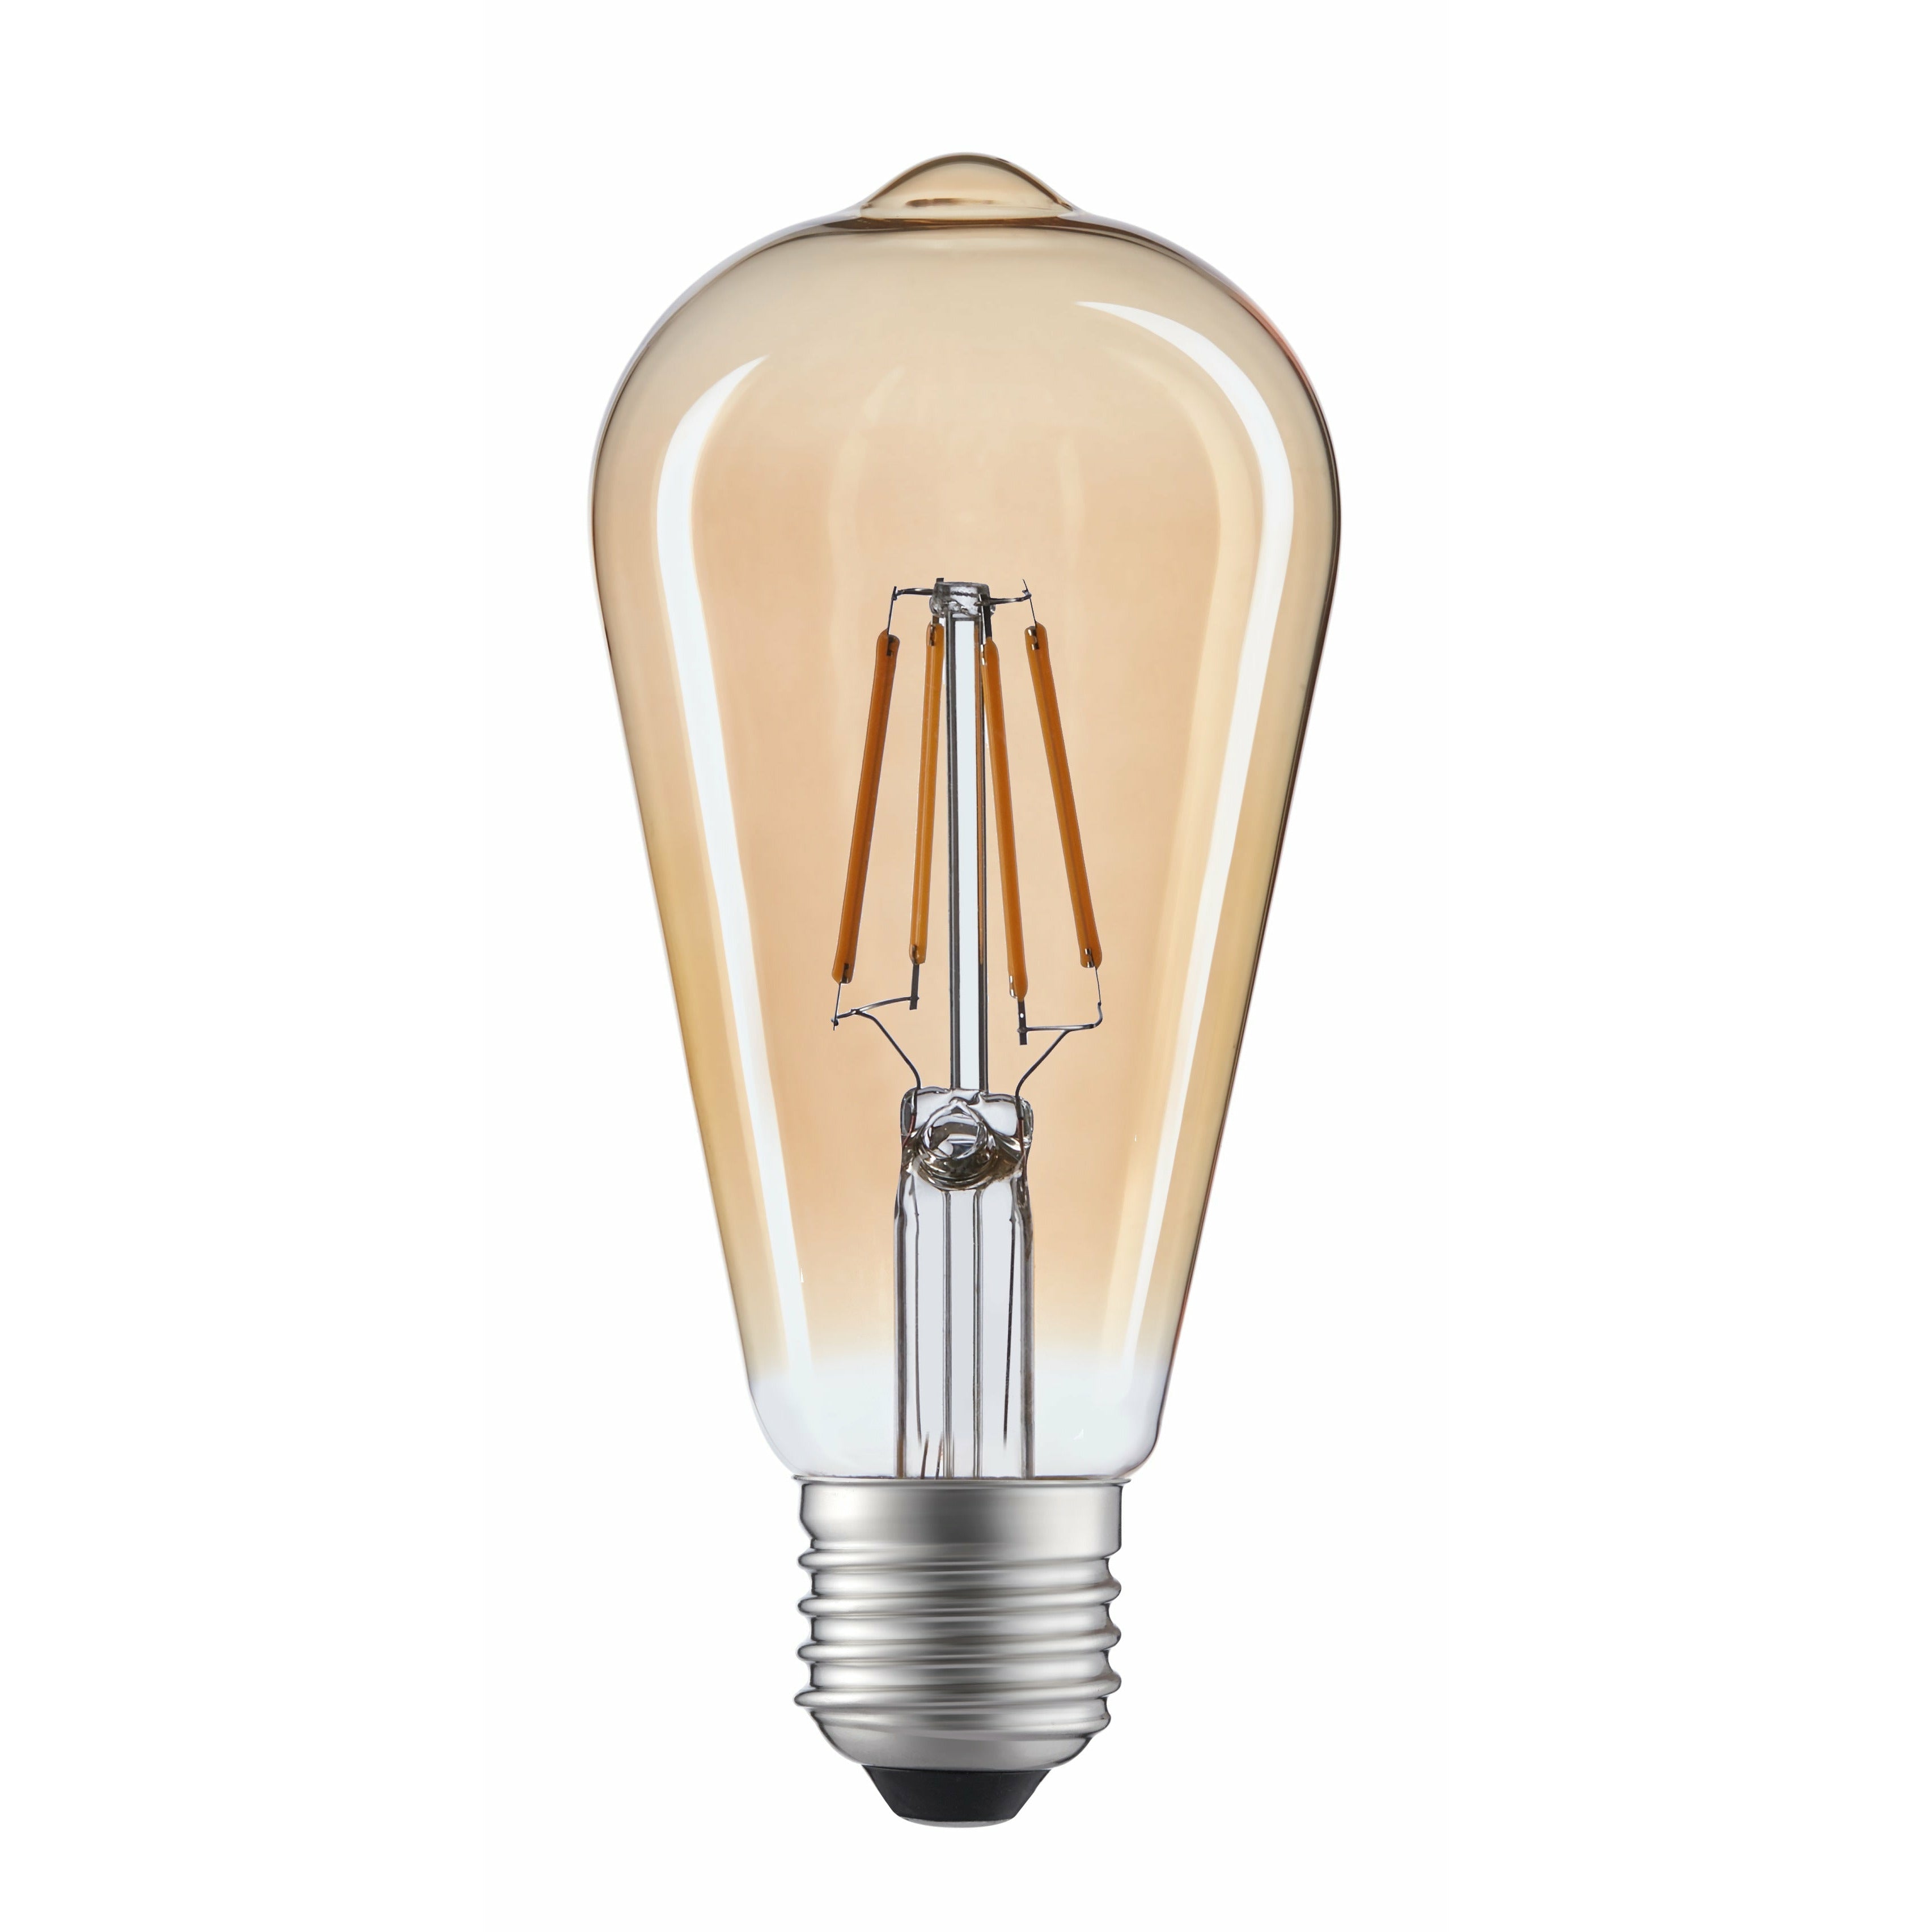 St19 Warm White 2700K LED 4W-Light Bulb (10 pack)